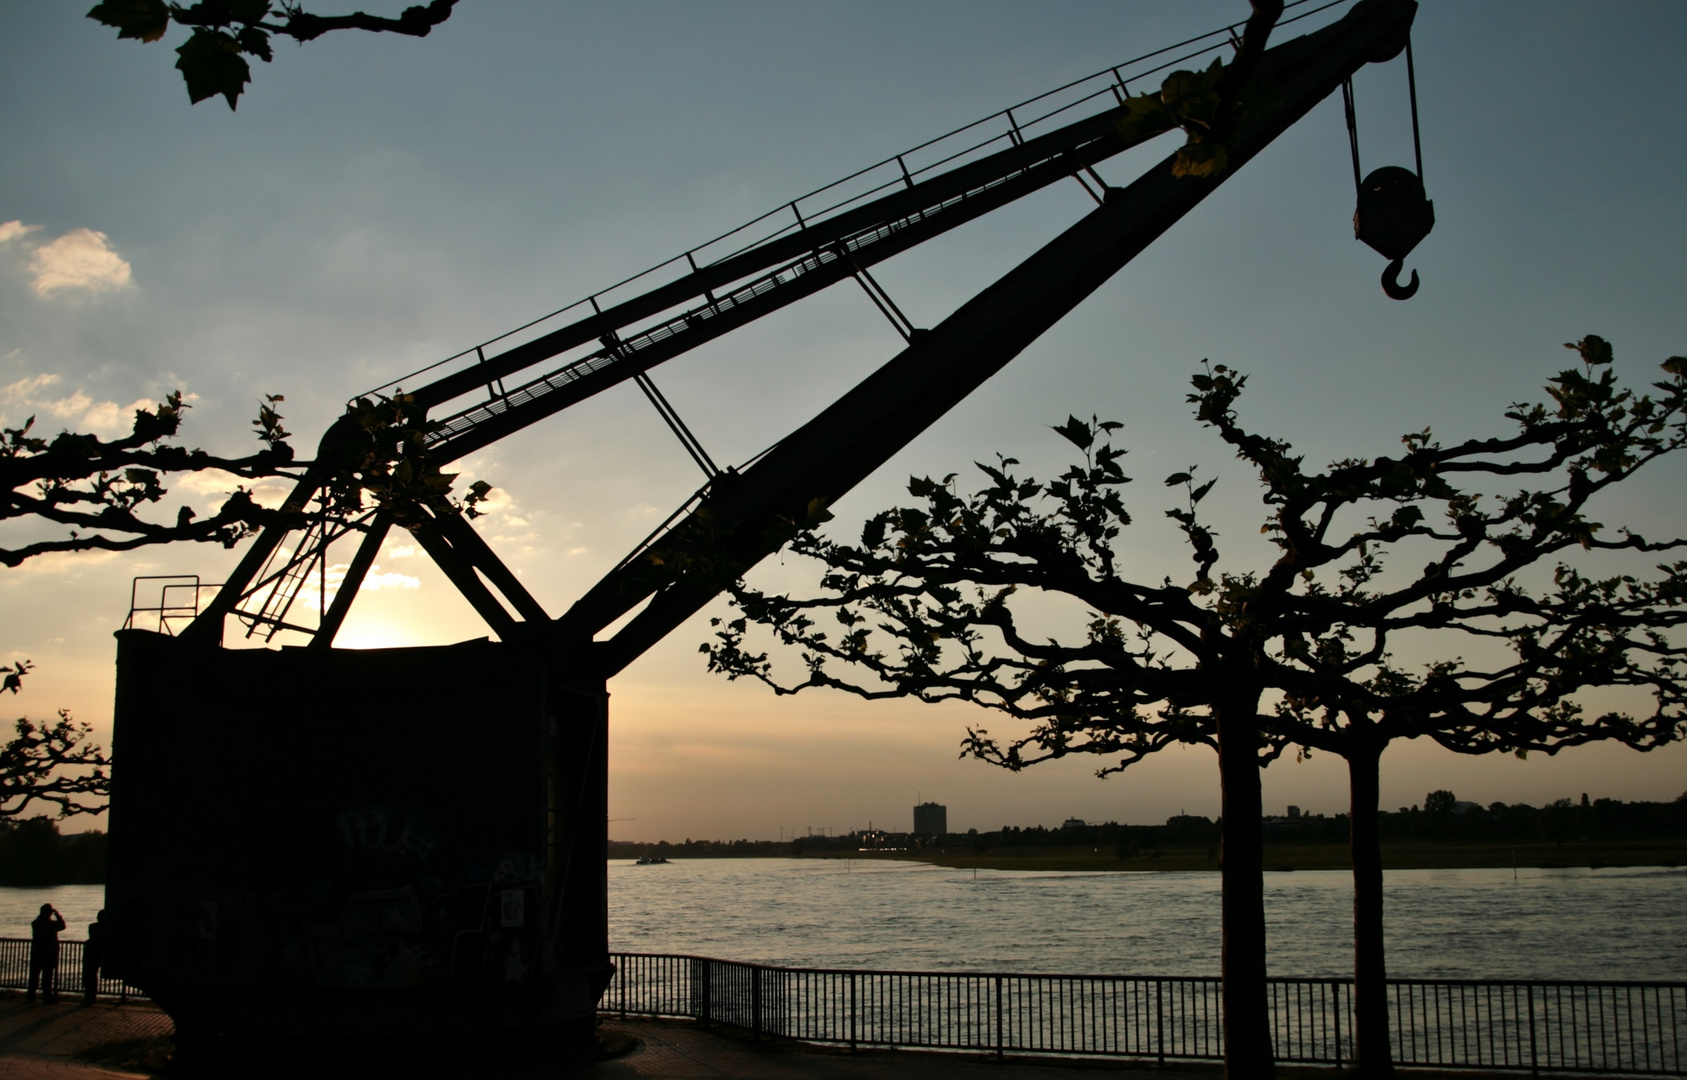 Sonnenuntergang am alten Hafen